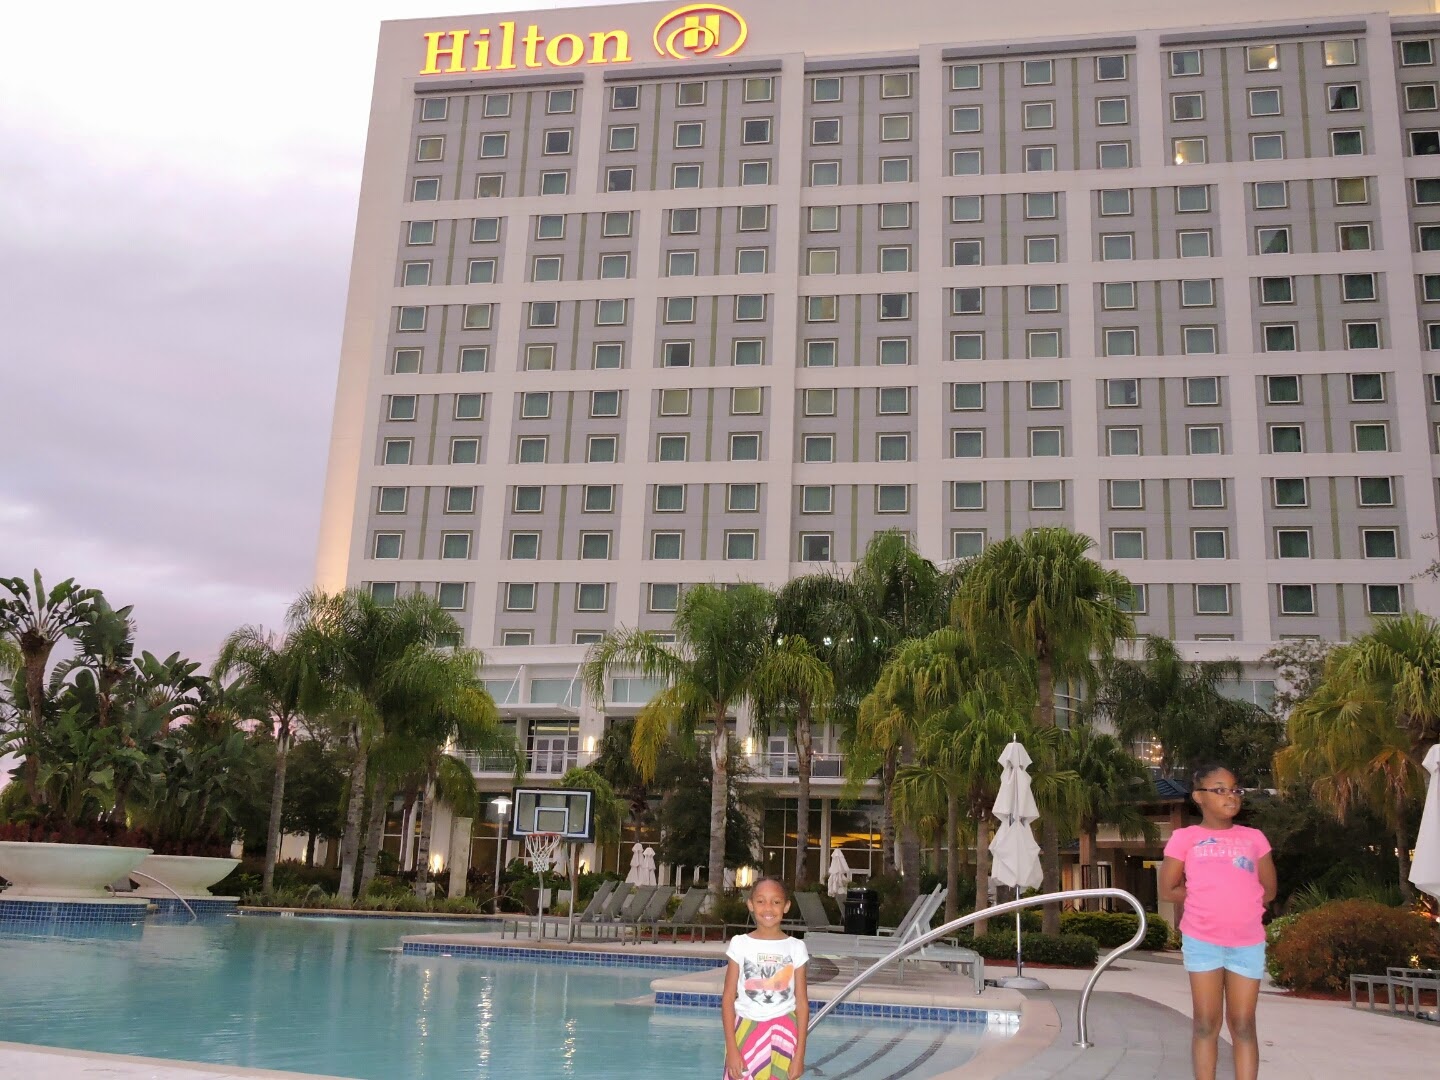 Our Time at the Hilton Orlando Hotel and Review #HiltonOrlando via www.productreviewmom.com